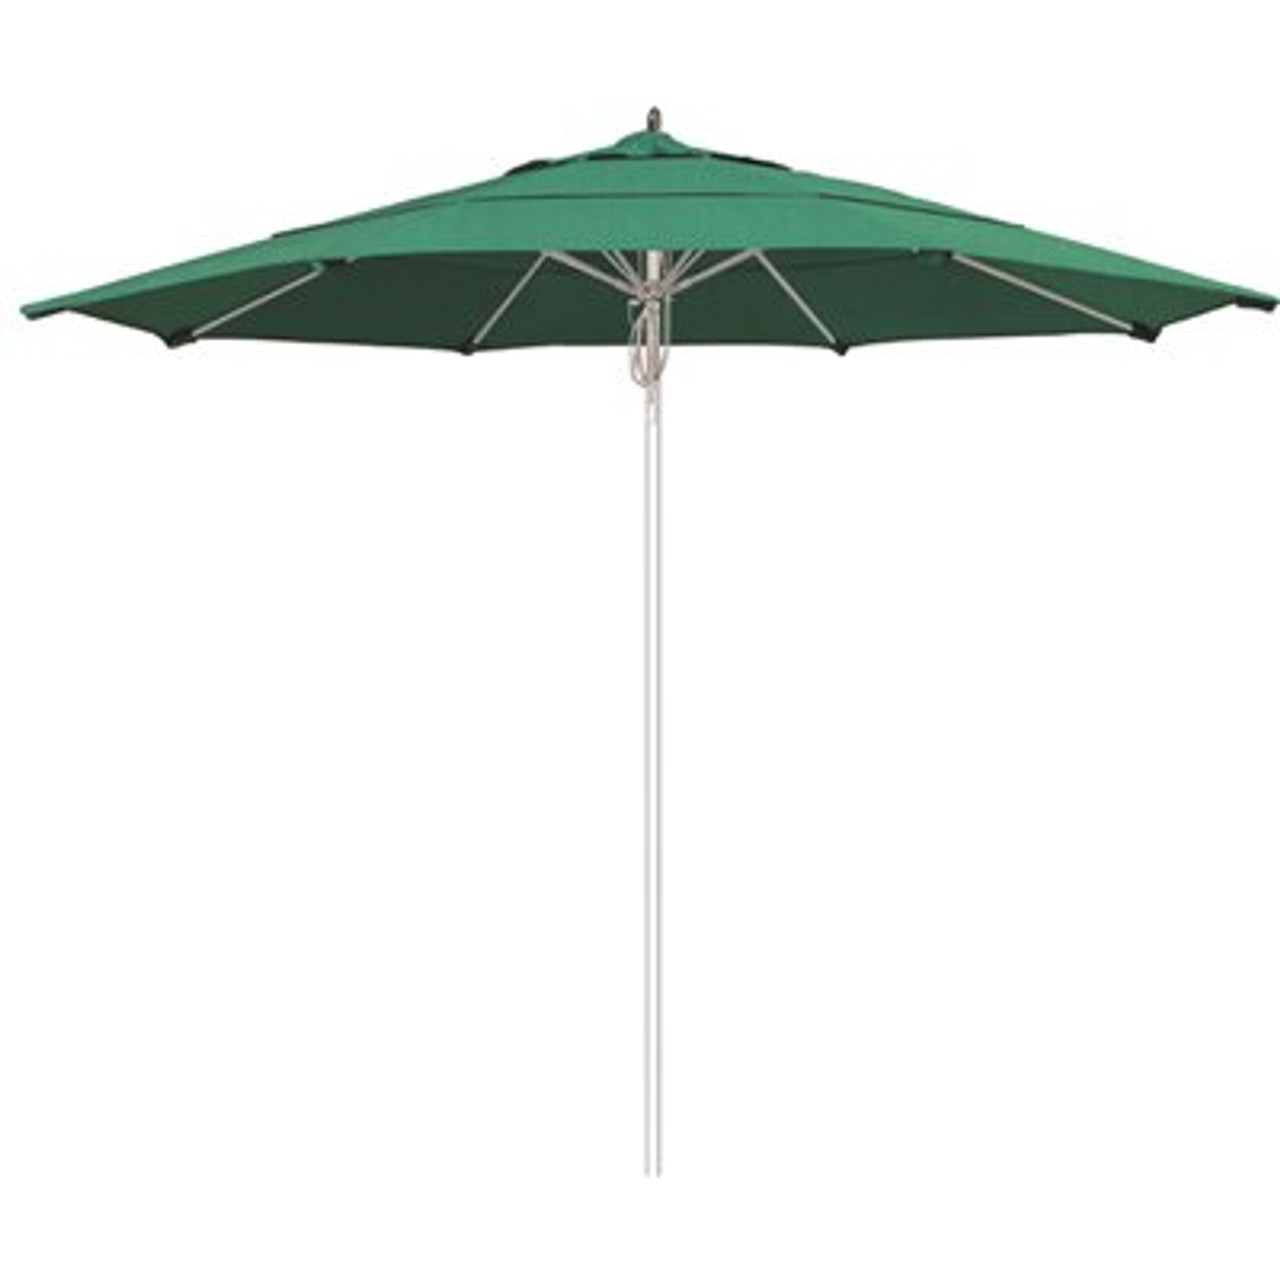 11 ft. Silver Aluminum Commercial Market Patio Umbrella Fiberglass Ribs and Pulley lift in Spectrum Aztec Sunbrella